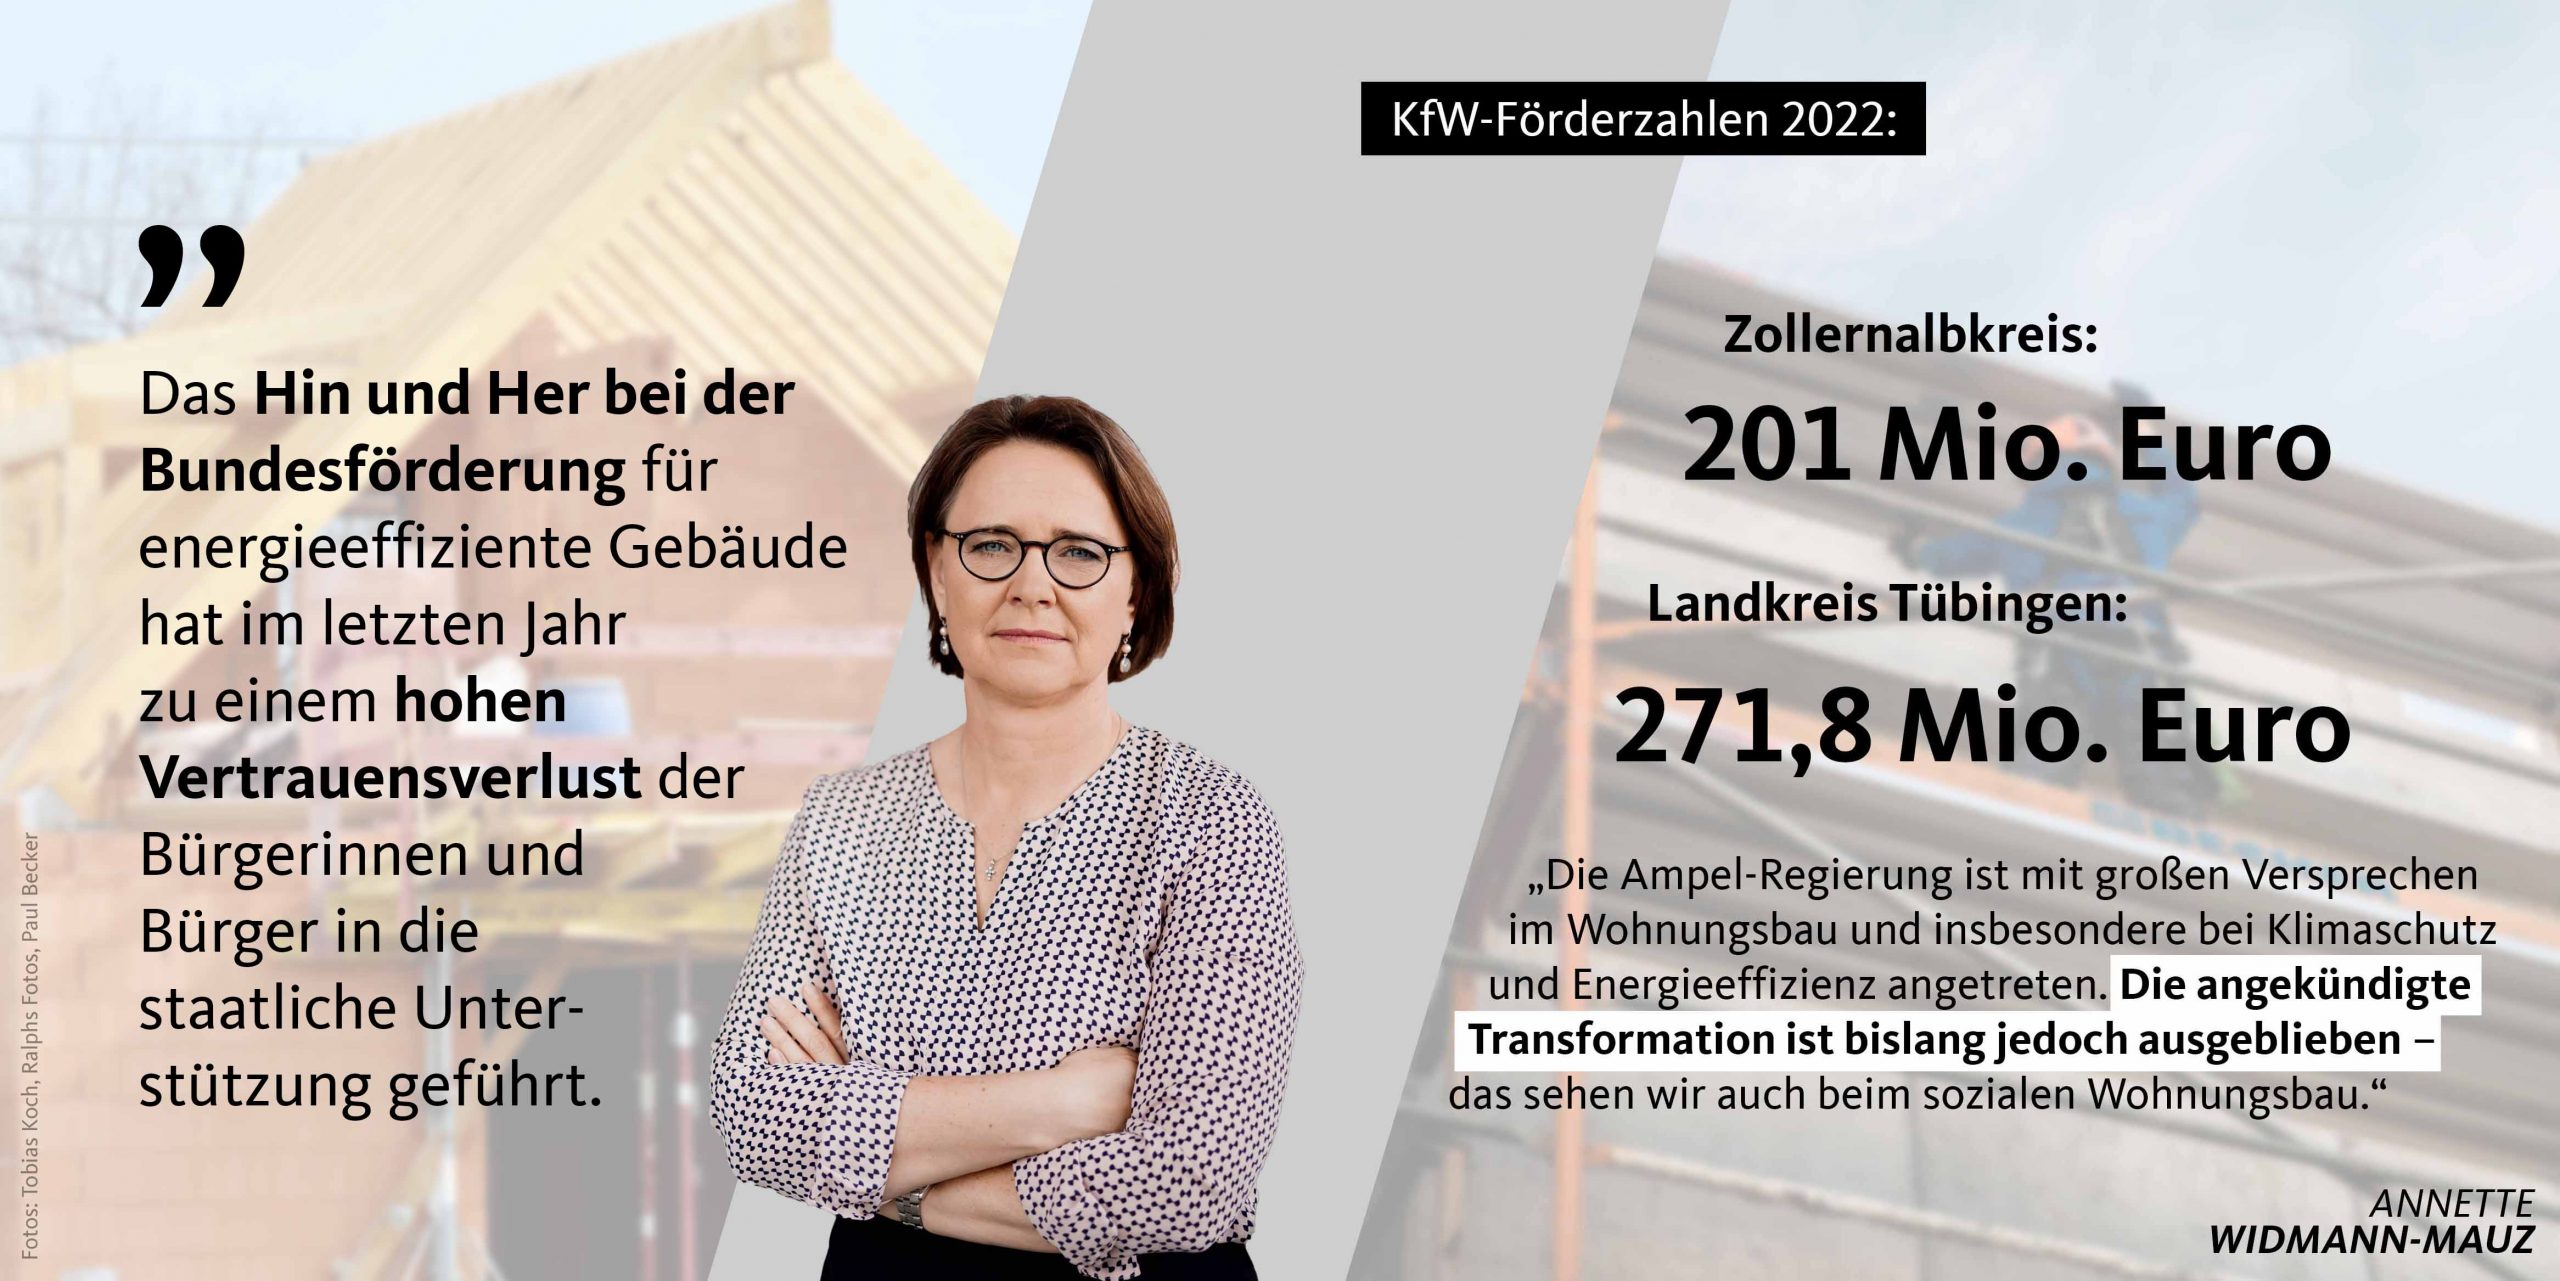 KfW-Förderung im Jahr 2022 im Landkreis Tübingen und im Zollernalbkreis auf hohem Niveau – Bundesregierung bleibt hinter selbstgesteckten Zielen zurück